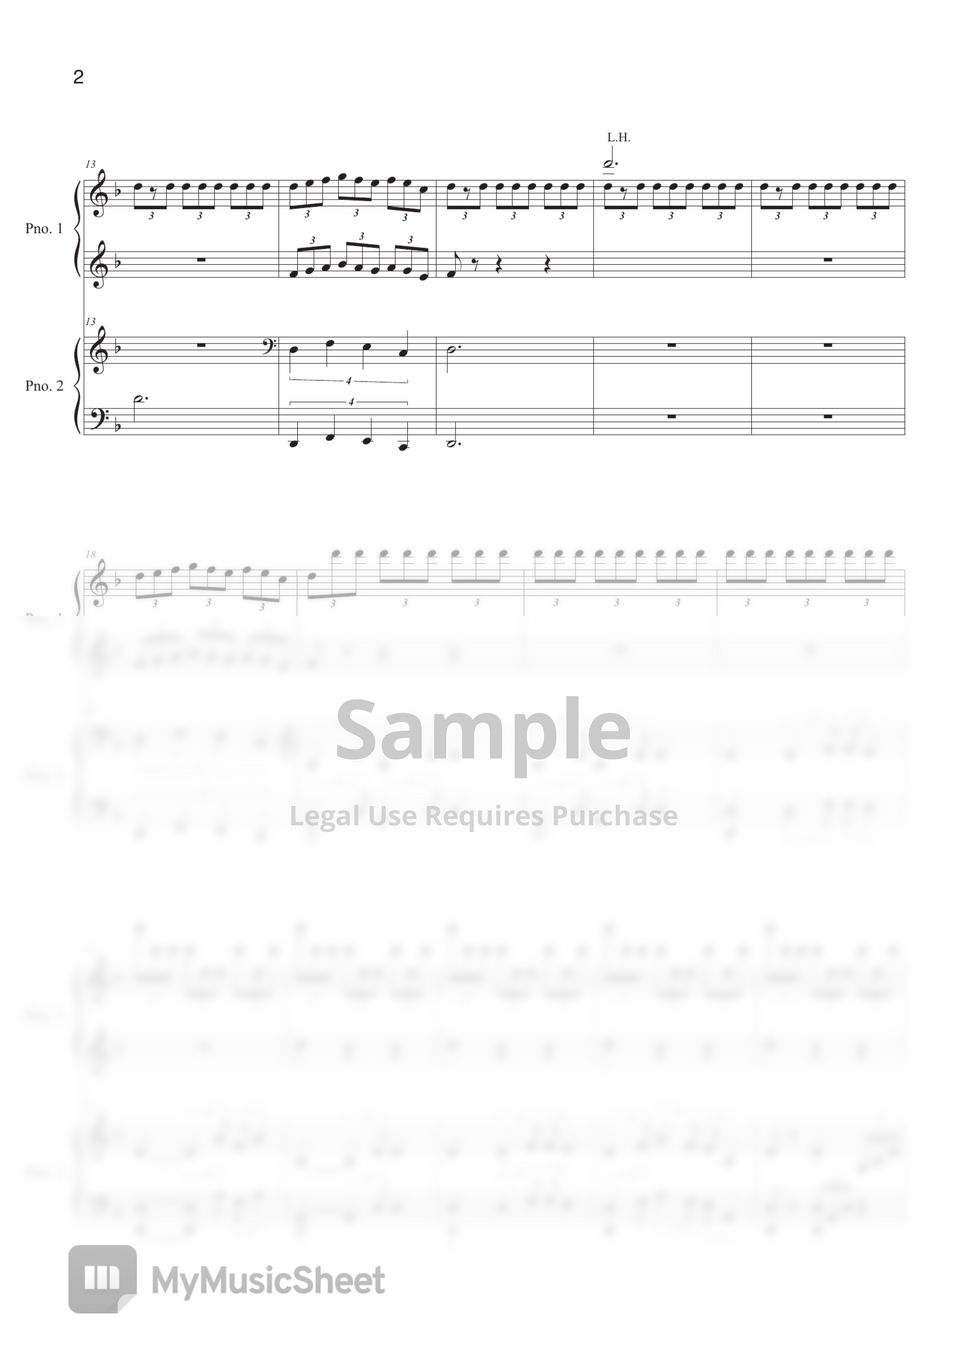 Lee jisoo - Arrange Rhapsody (4hands Piano) by Bella&Lucas